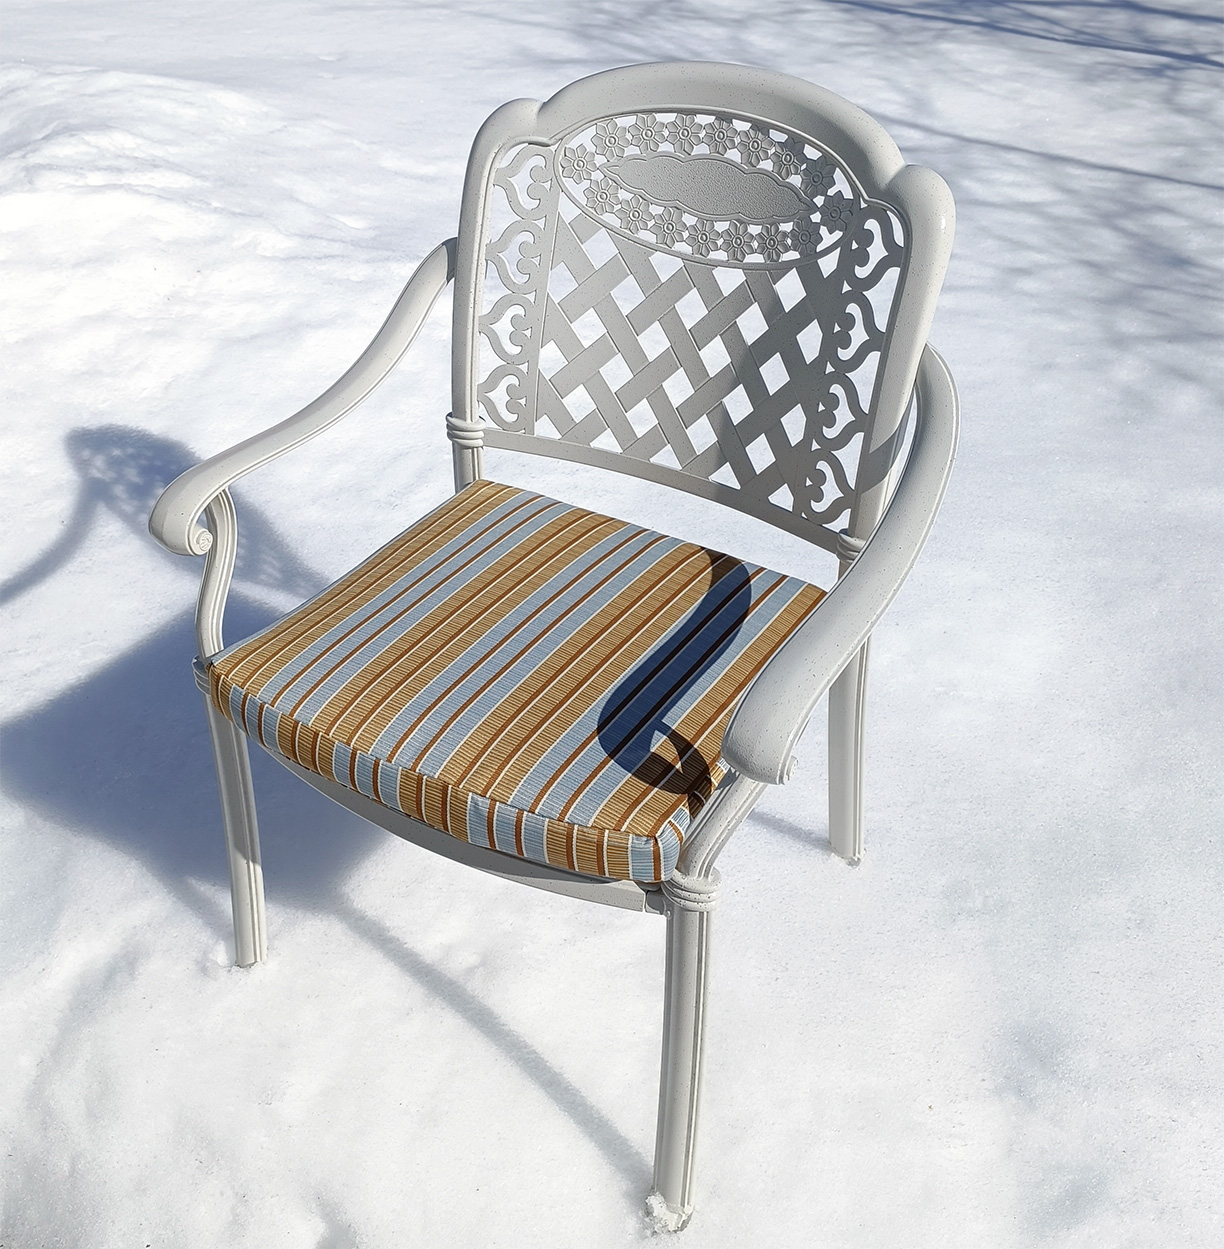 Металлическая белая мебель для сада, кресла для улицы на металлическом каркасе, садовая мебель из литого алюминия от производителя, кованая уличная мебель, стулья и кресла из металла для летних кафе